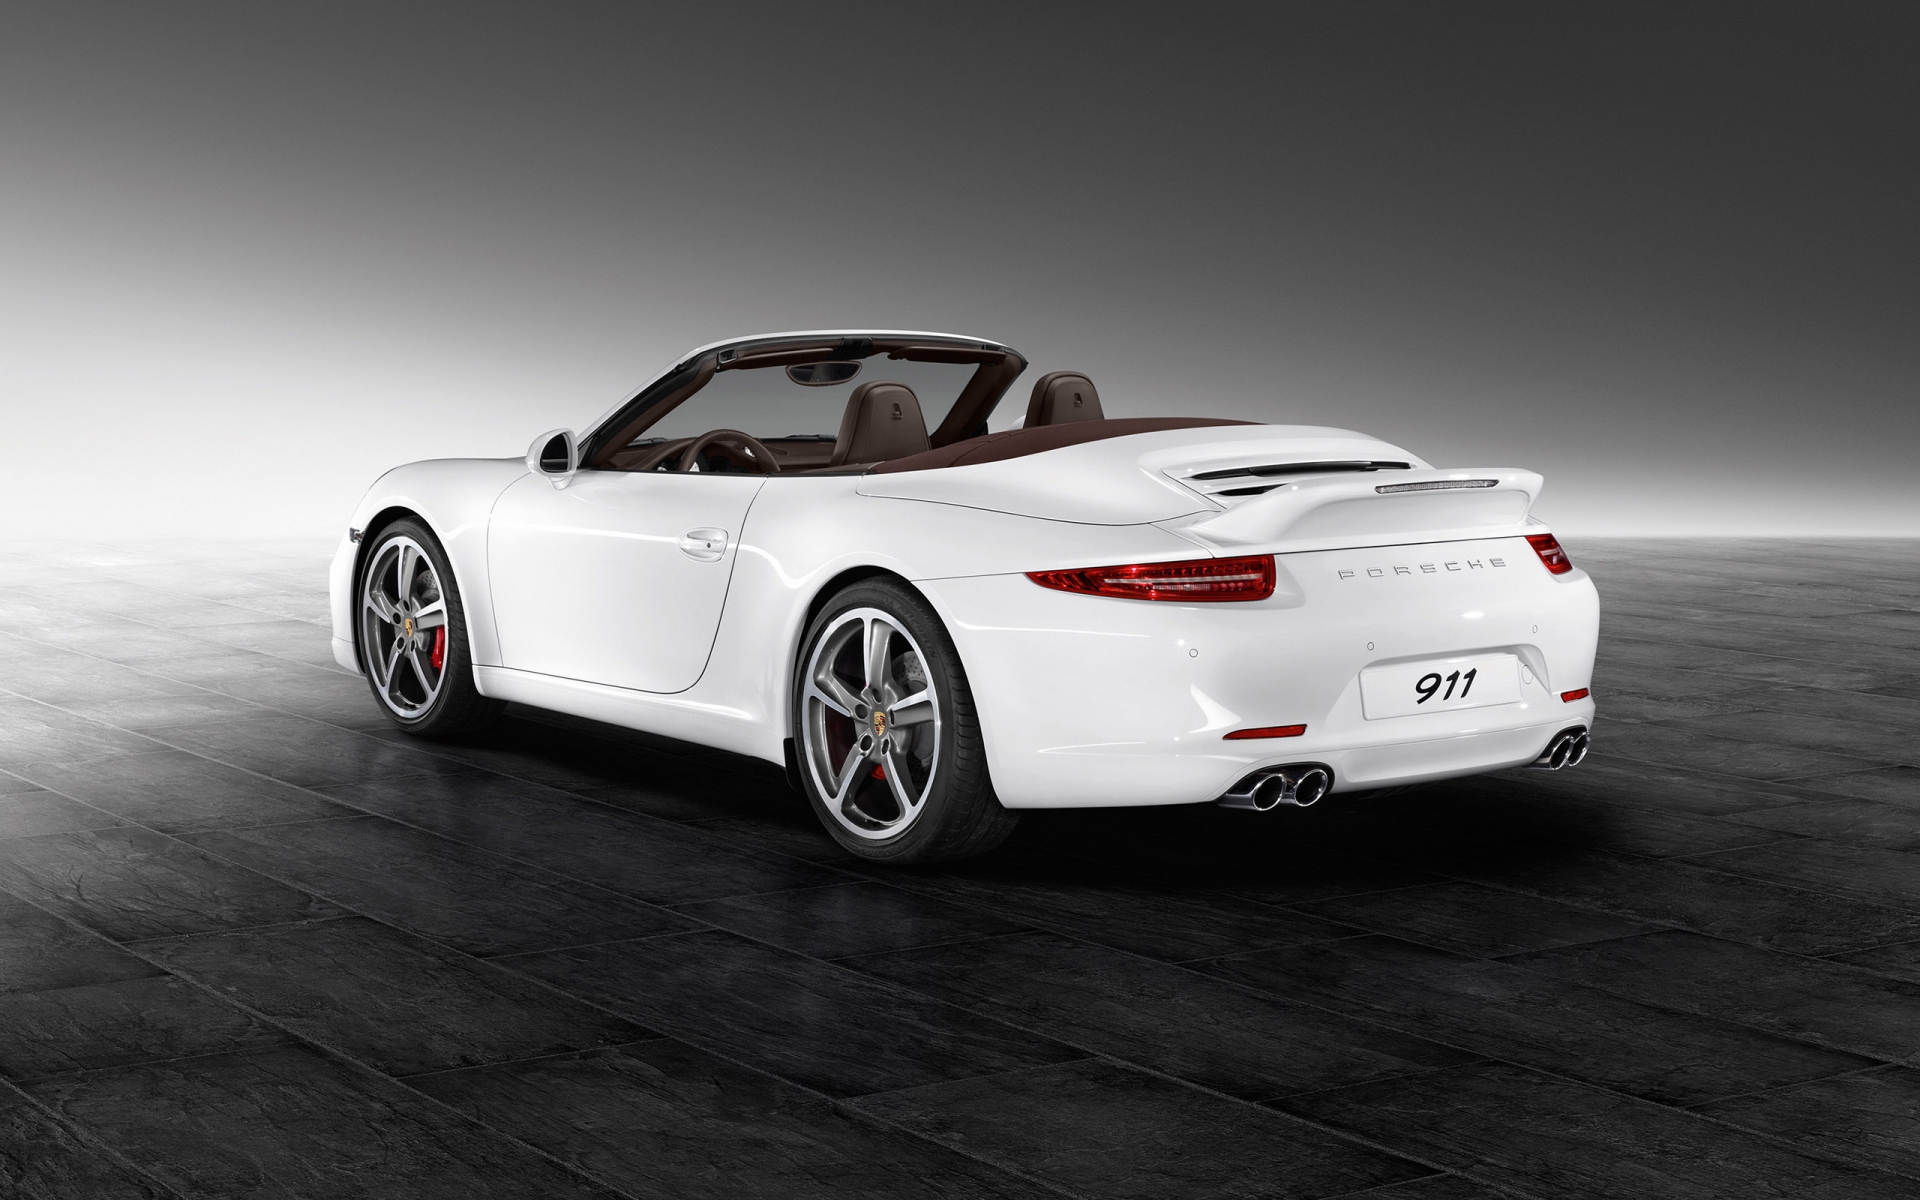 White Porsche 911 Carrera S for 1920 x 1200 widescreen resolution